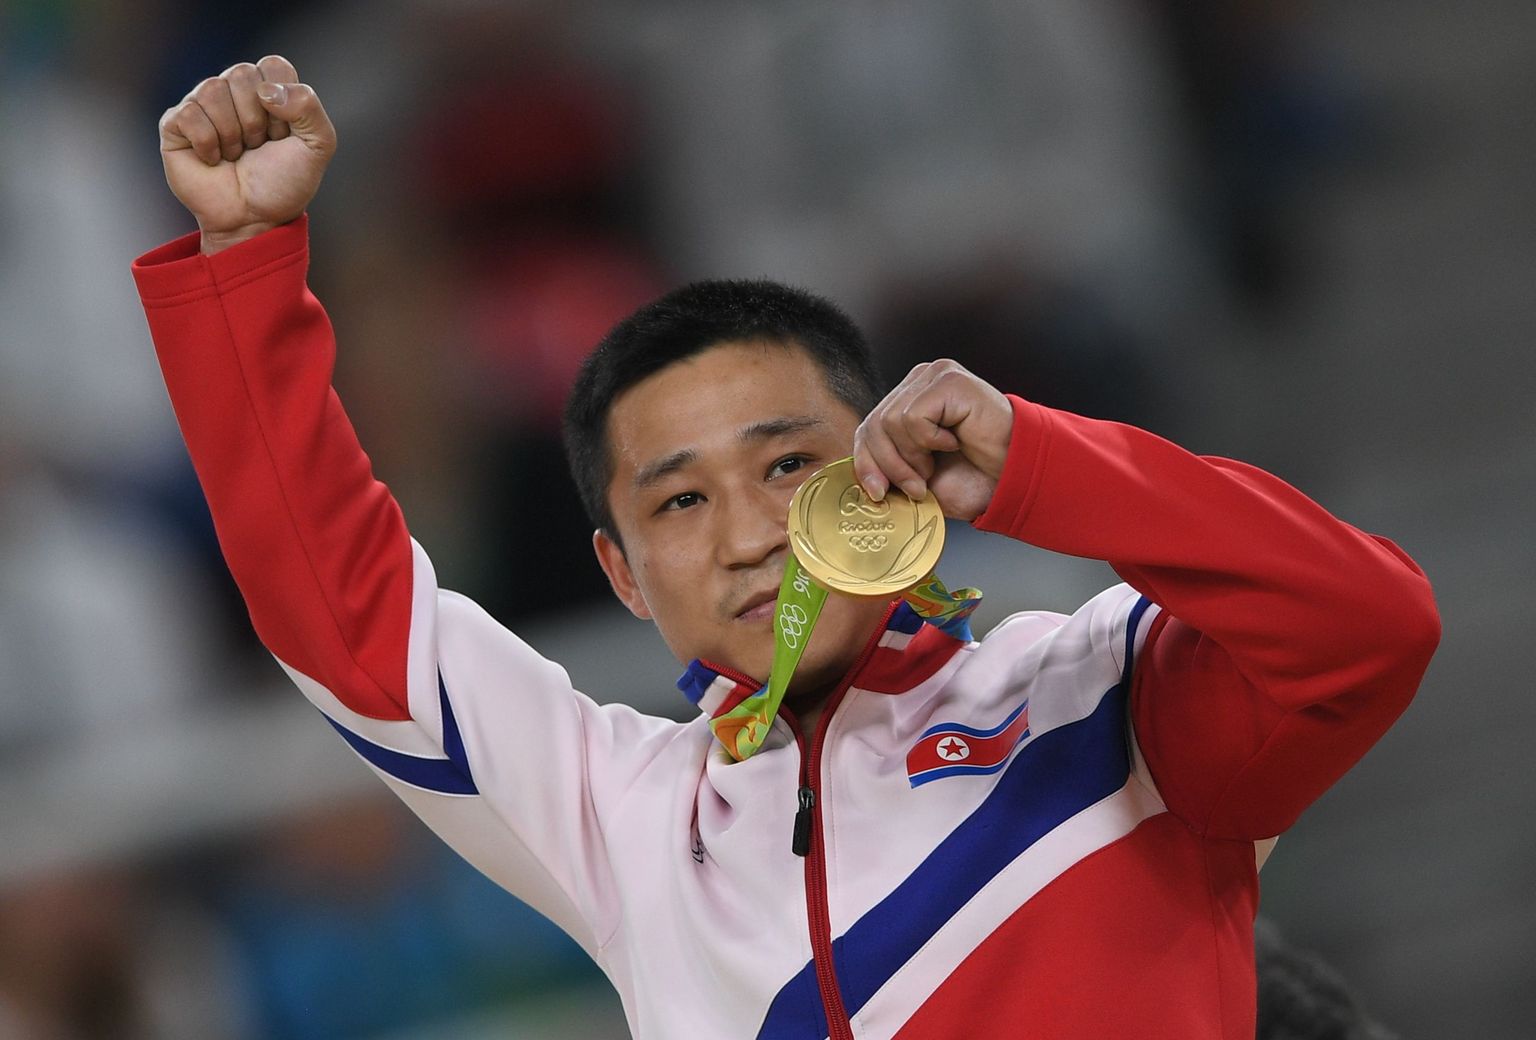 Põhjakorealasest olümpiavõitja Ri Se-gwang